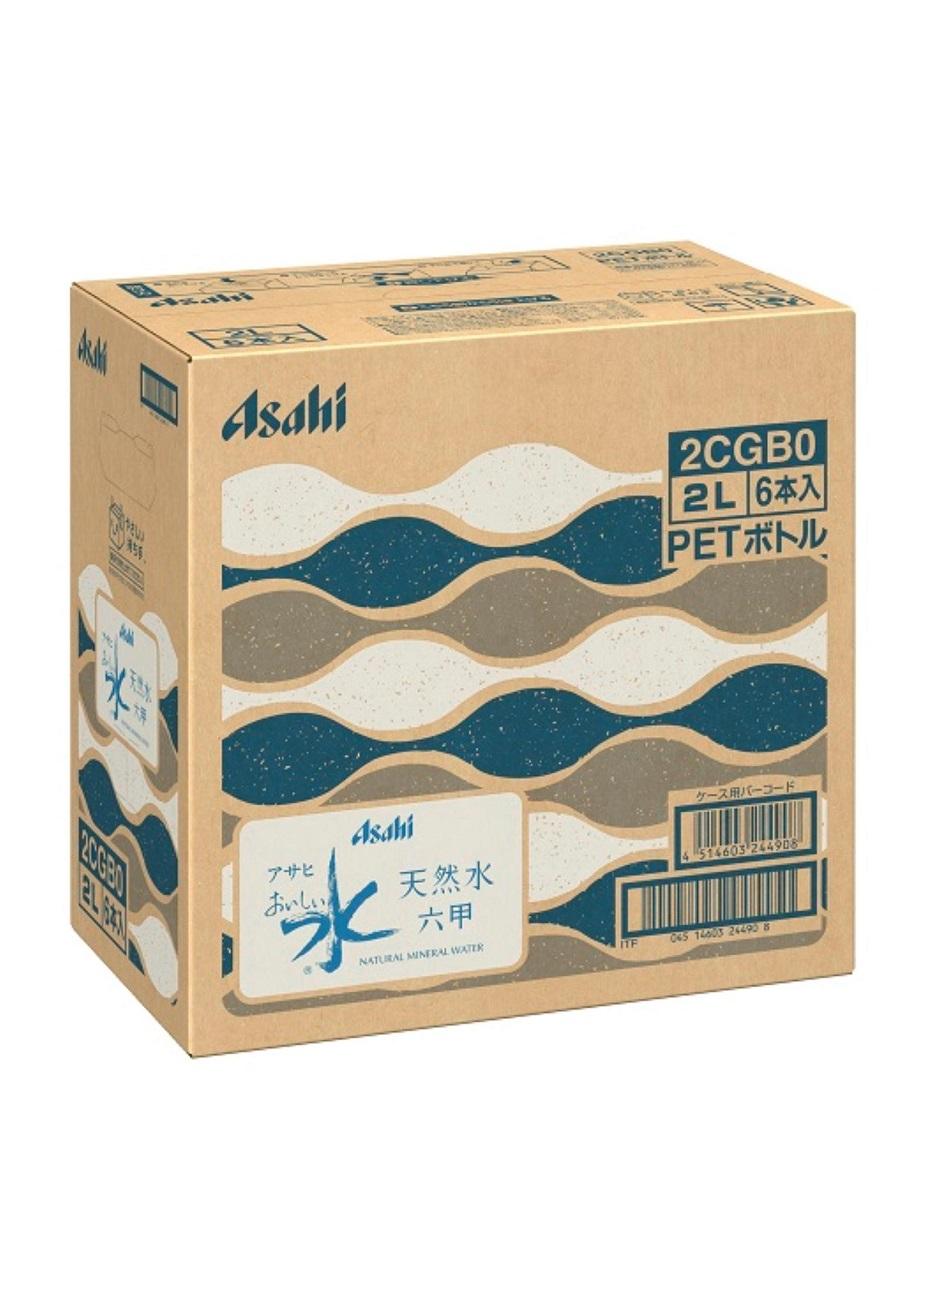 アサヒ おいしい水 天然水 六甲 PET２L×12本(６本入り2ケース)